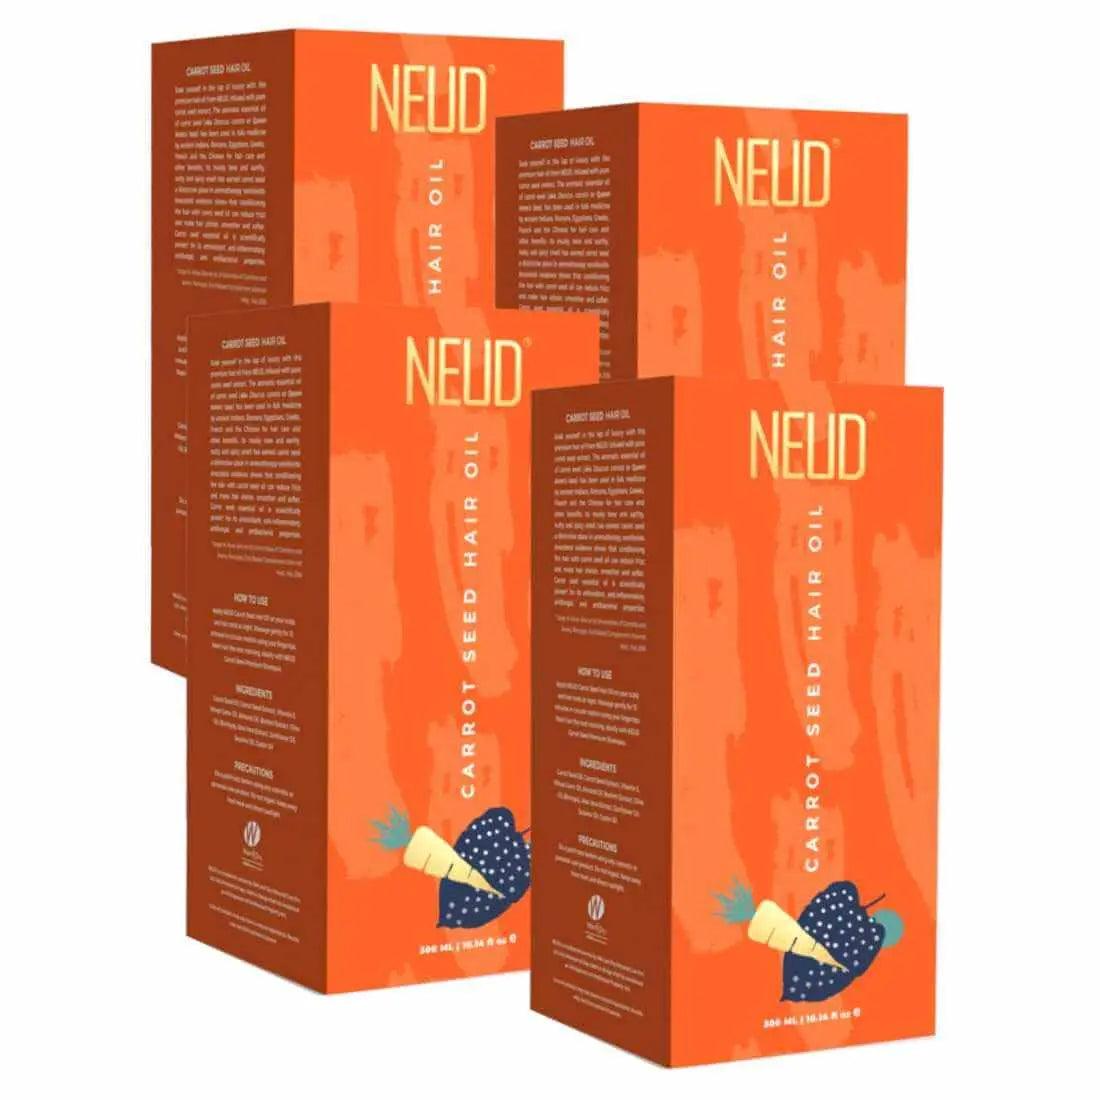 NEUD Carrot Seed Premium Hair Oil for Men & Women - 300ml 9559682300546